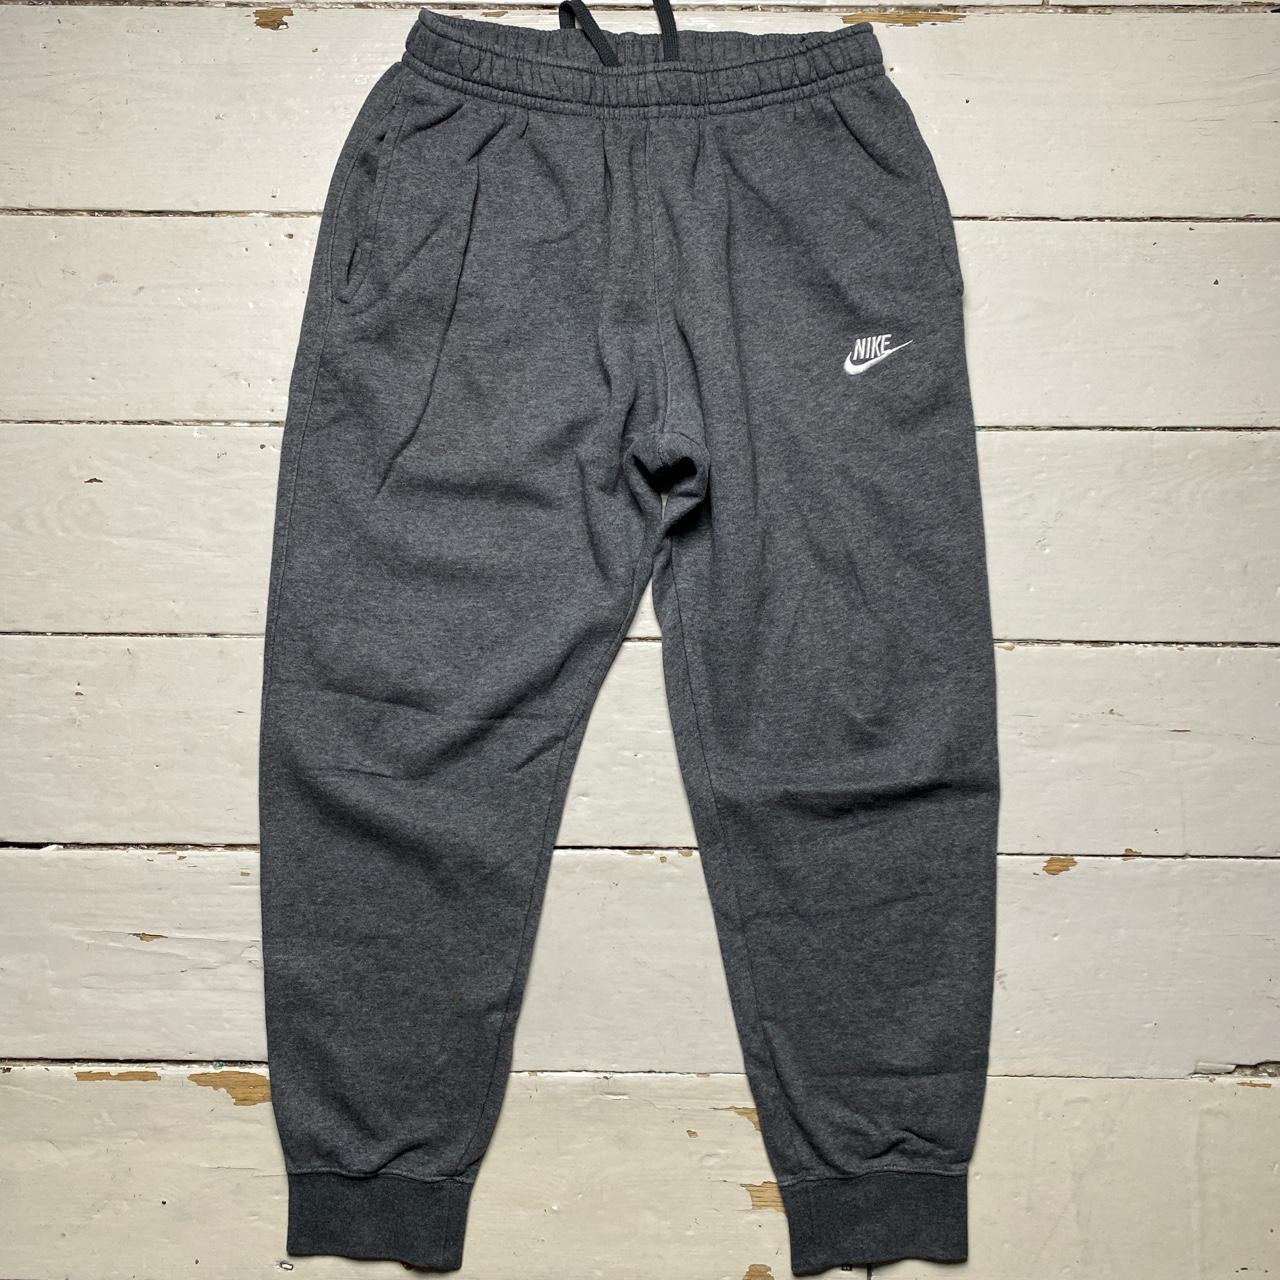 Nike Swoosh Joggers Grey (Medium)